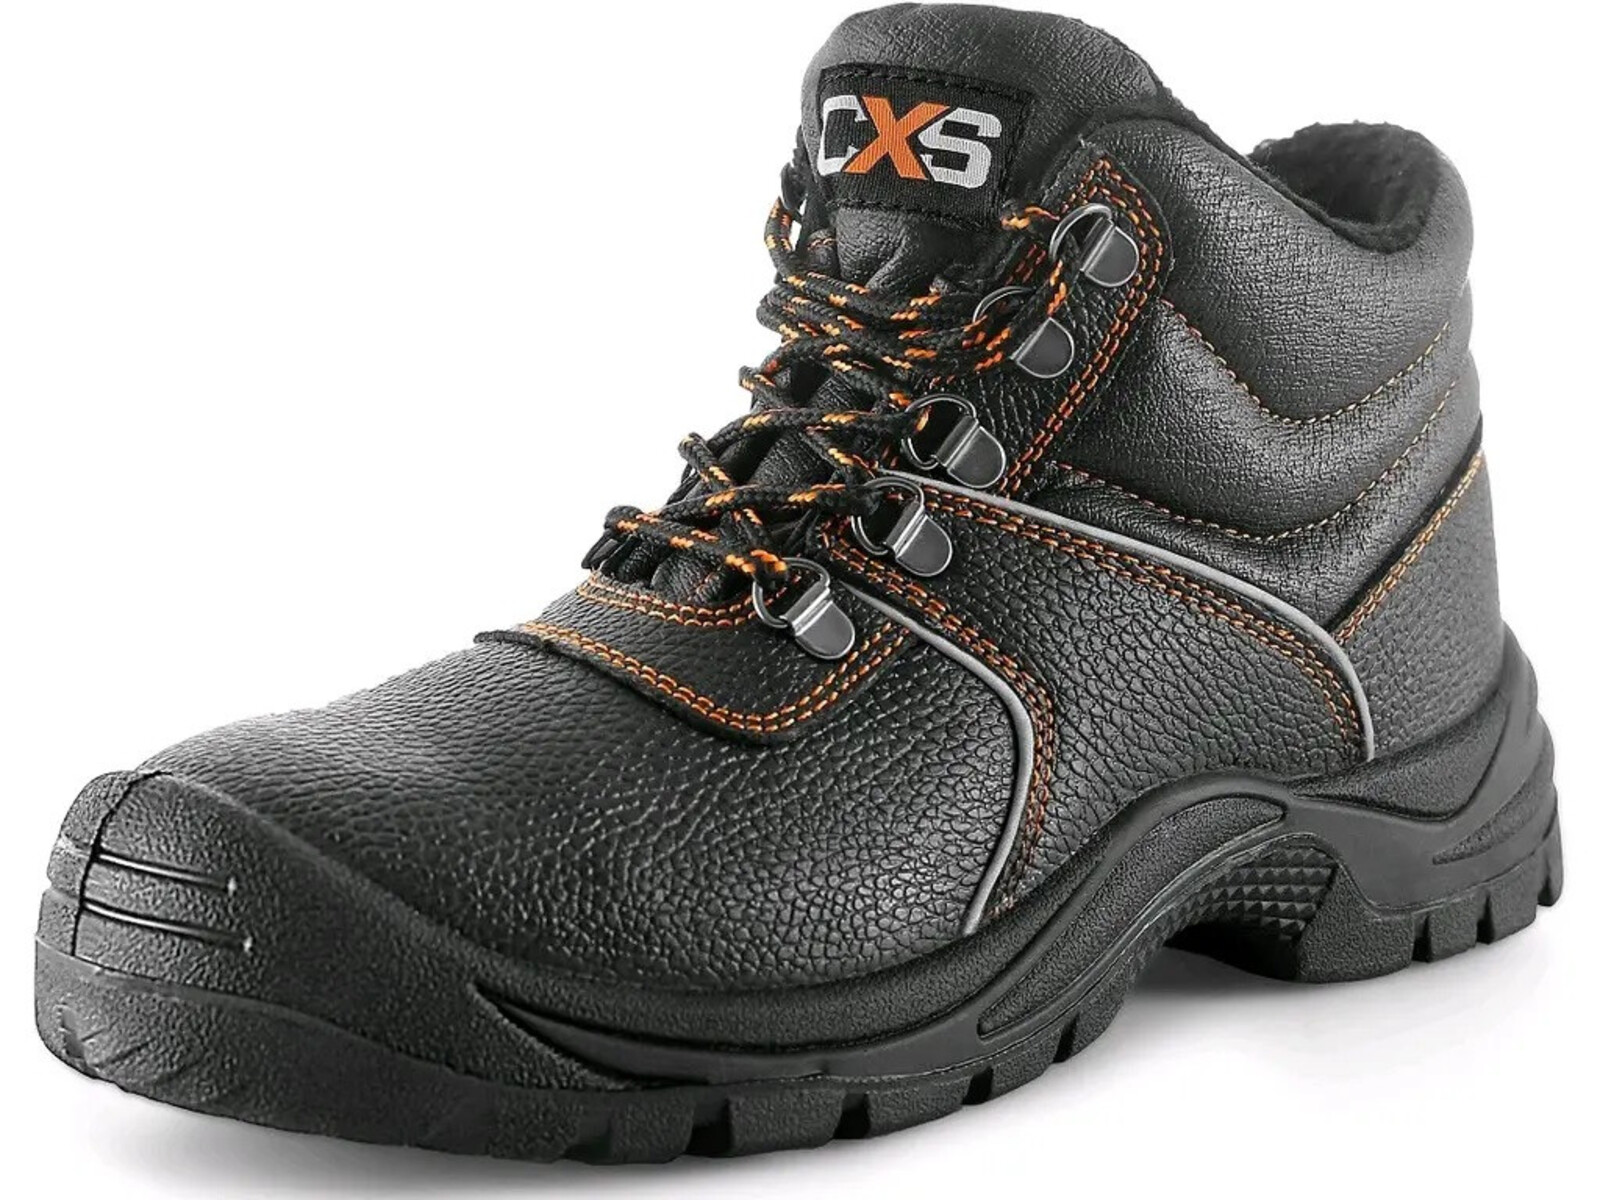 Zimná bezpečnostná členková obuv CXS Stone Apatit Winter S3 SRC - veľkosť: 42, farba: čierna/oranžová